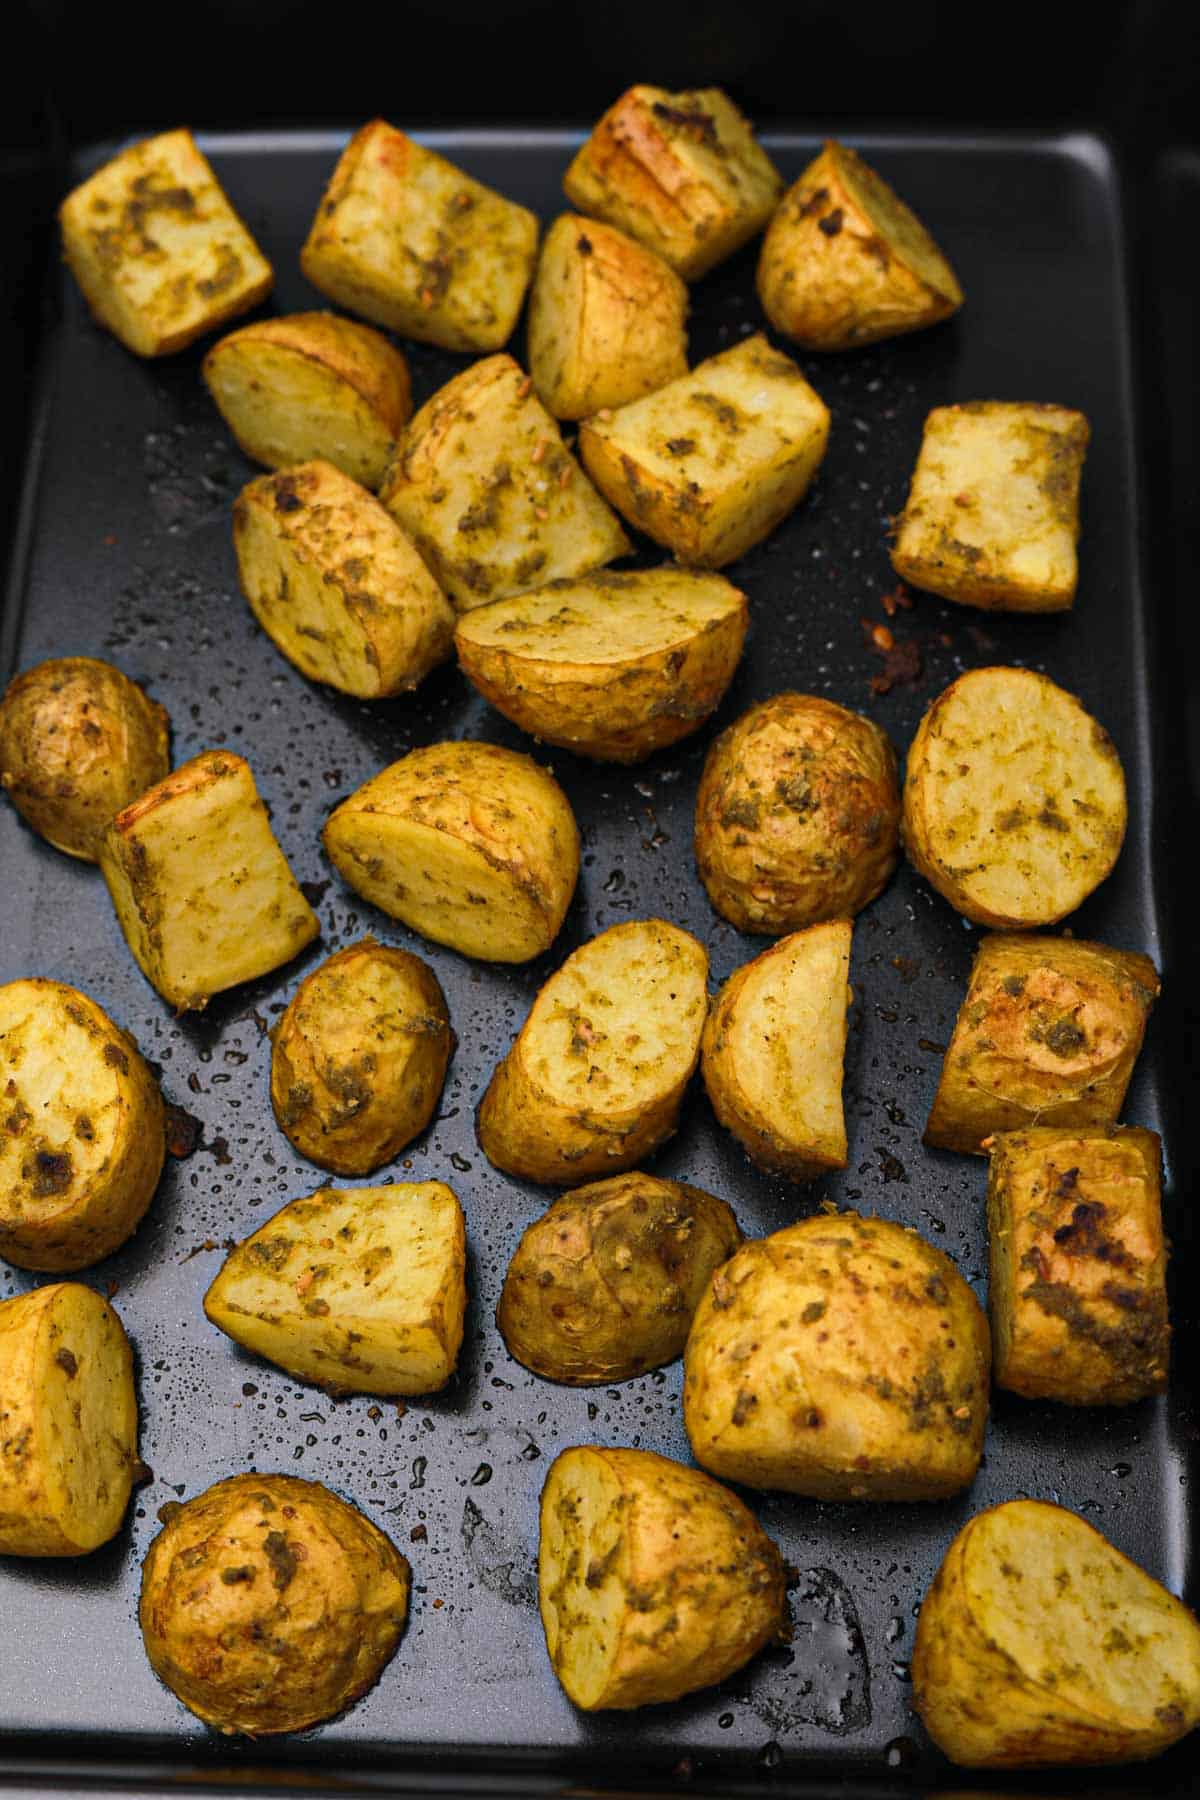 roasted pesto potatoes in baking tray.